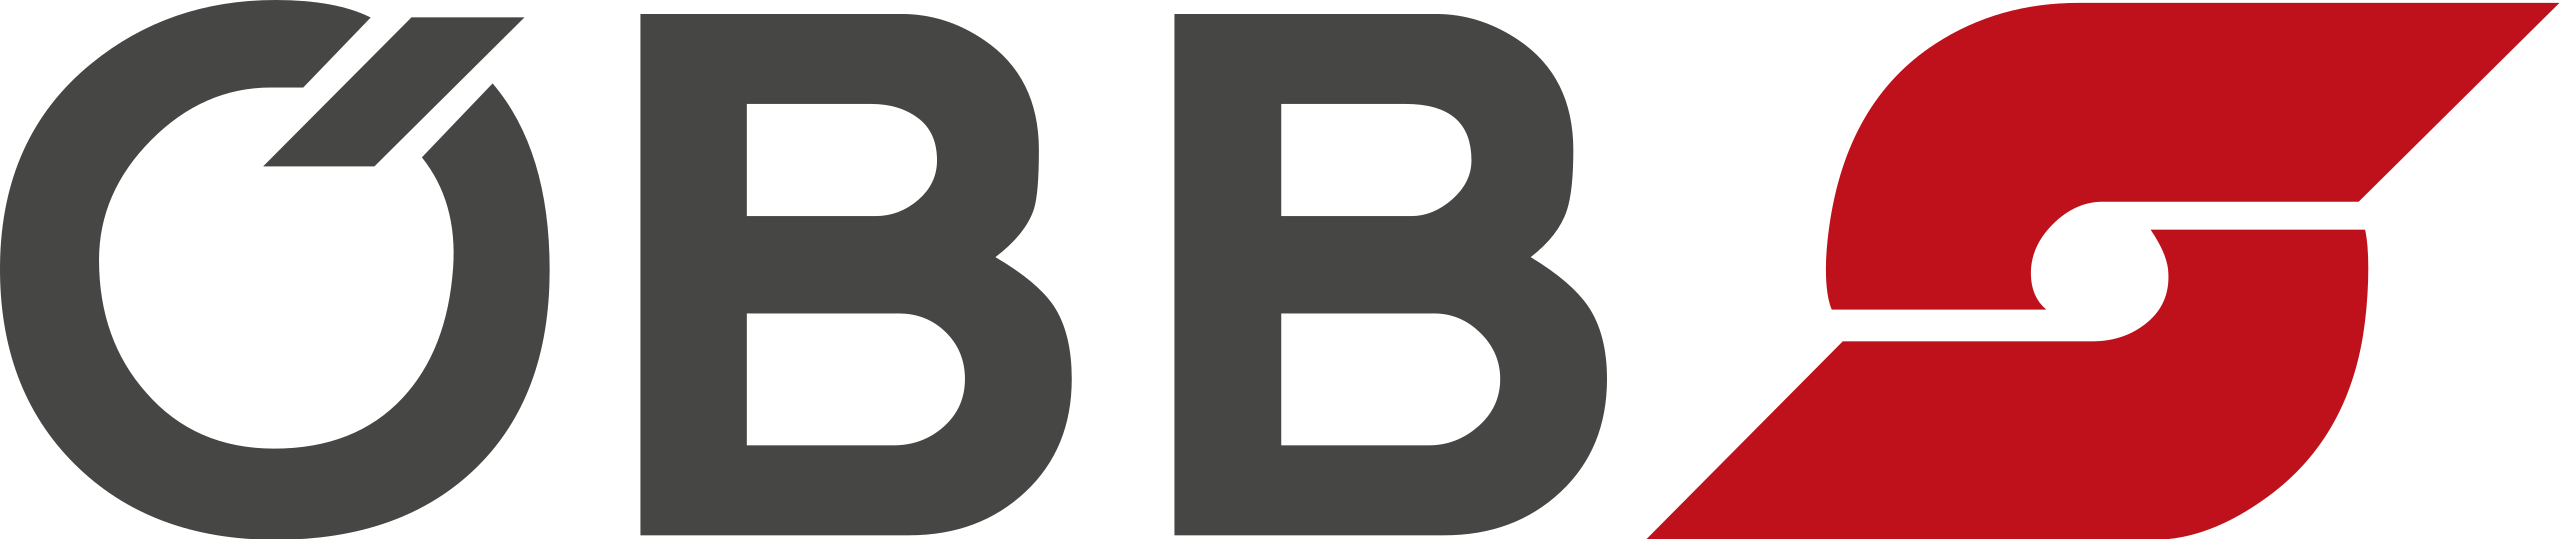 OeBB_Logo_1998.svg